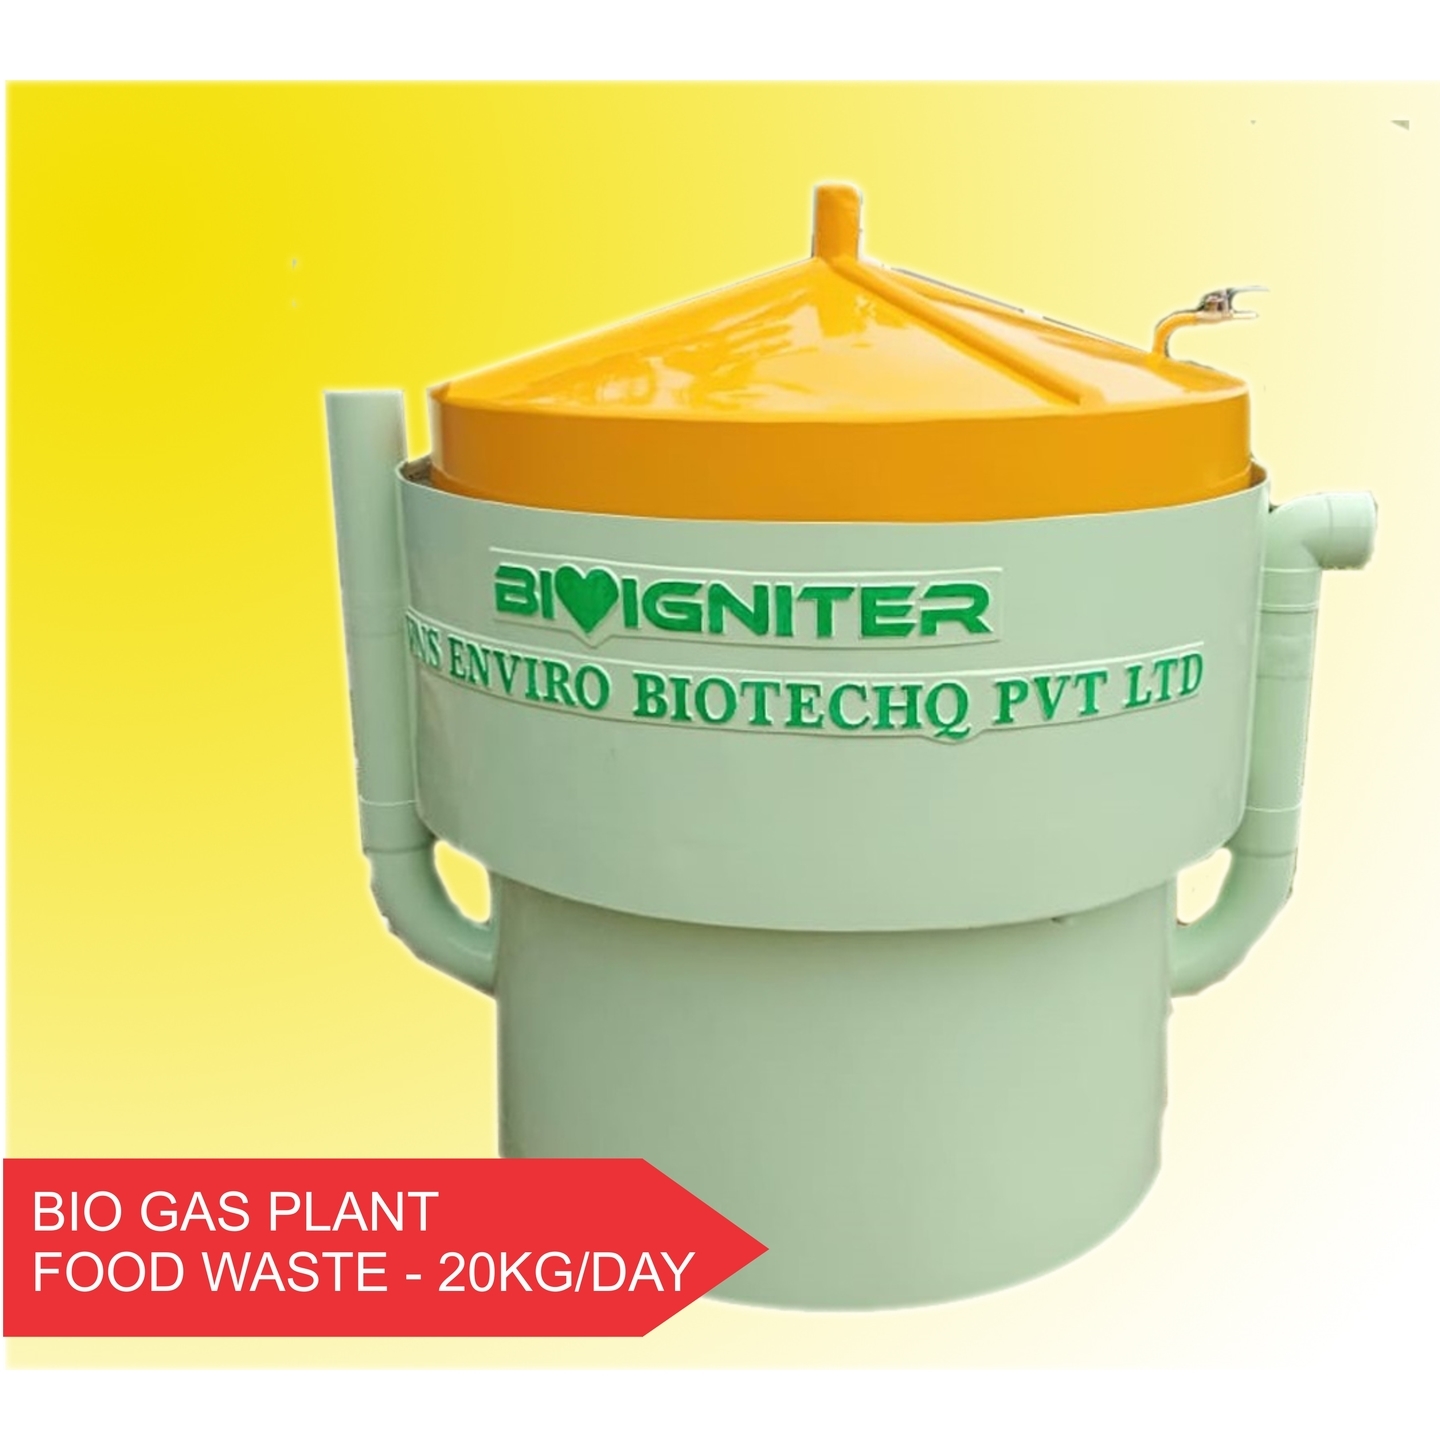 Bioigniter - 20KGDay Food Waste